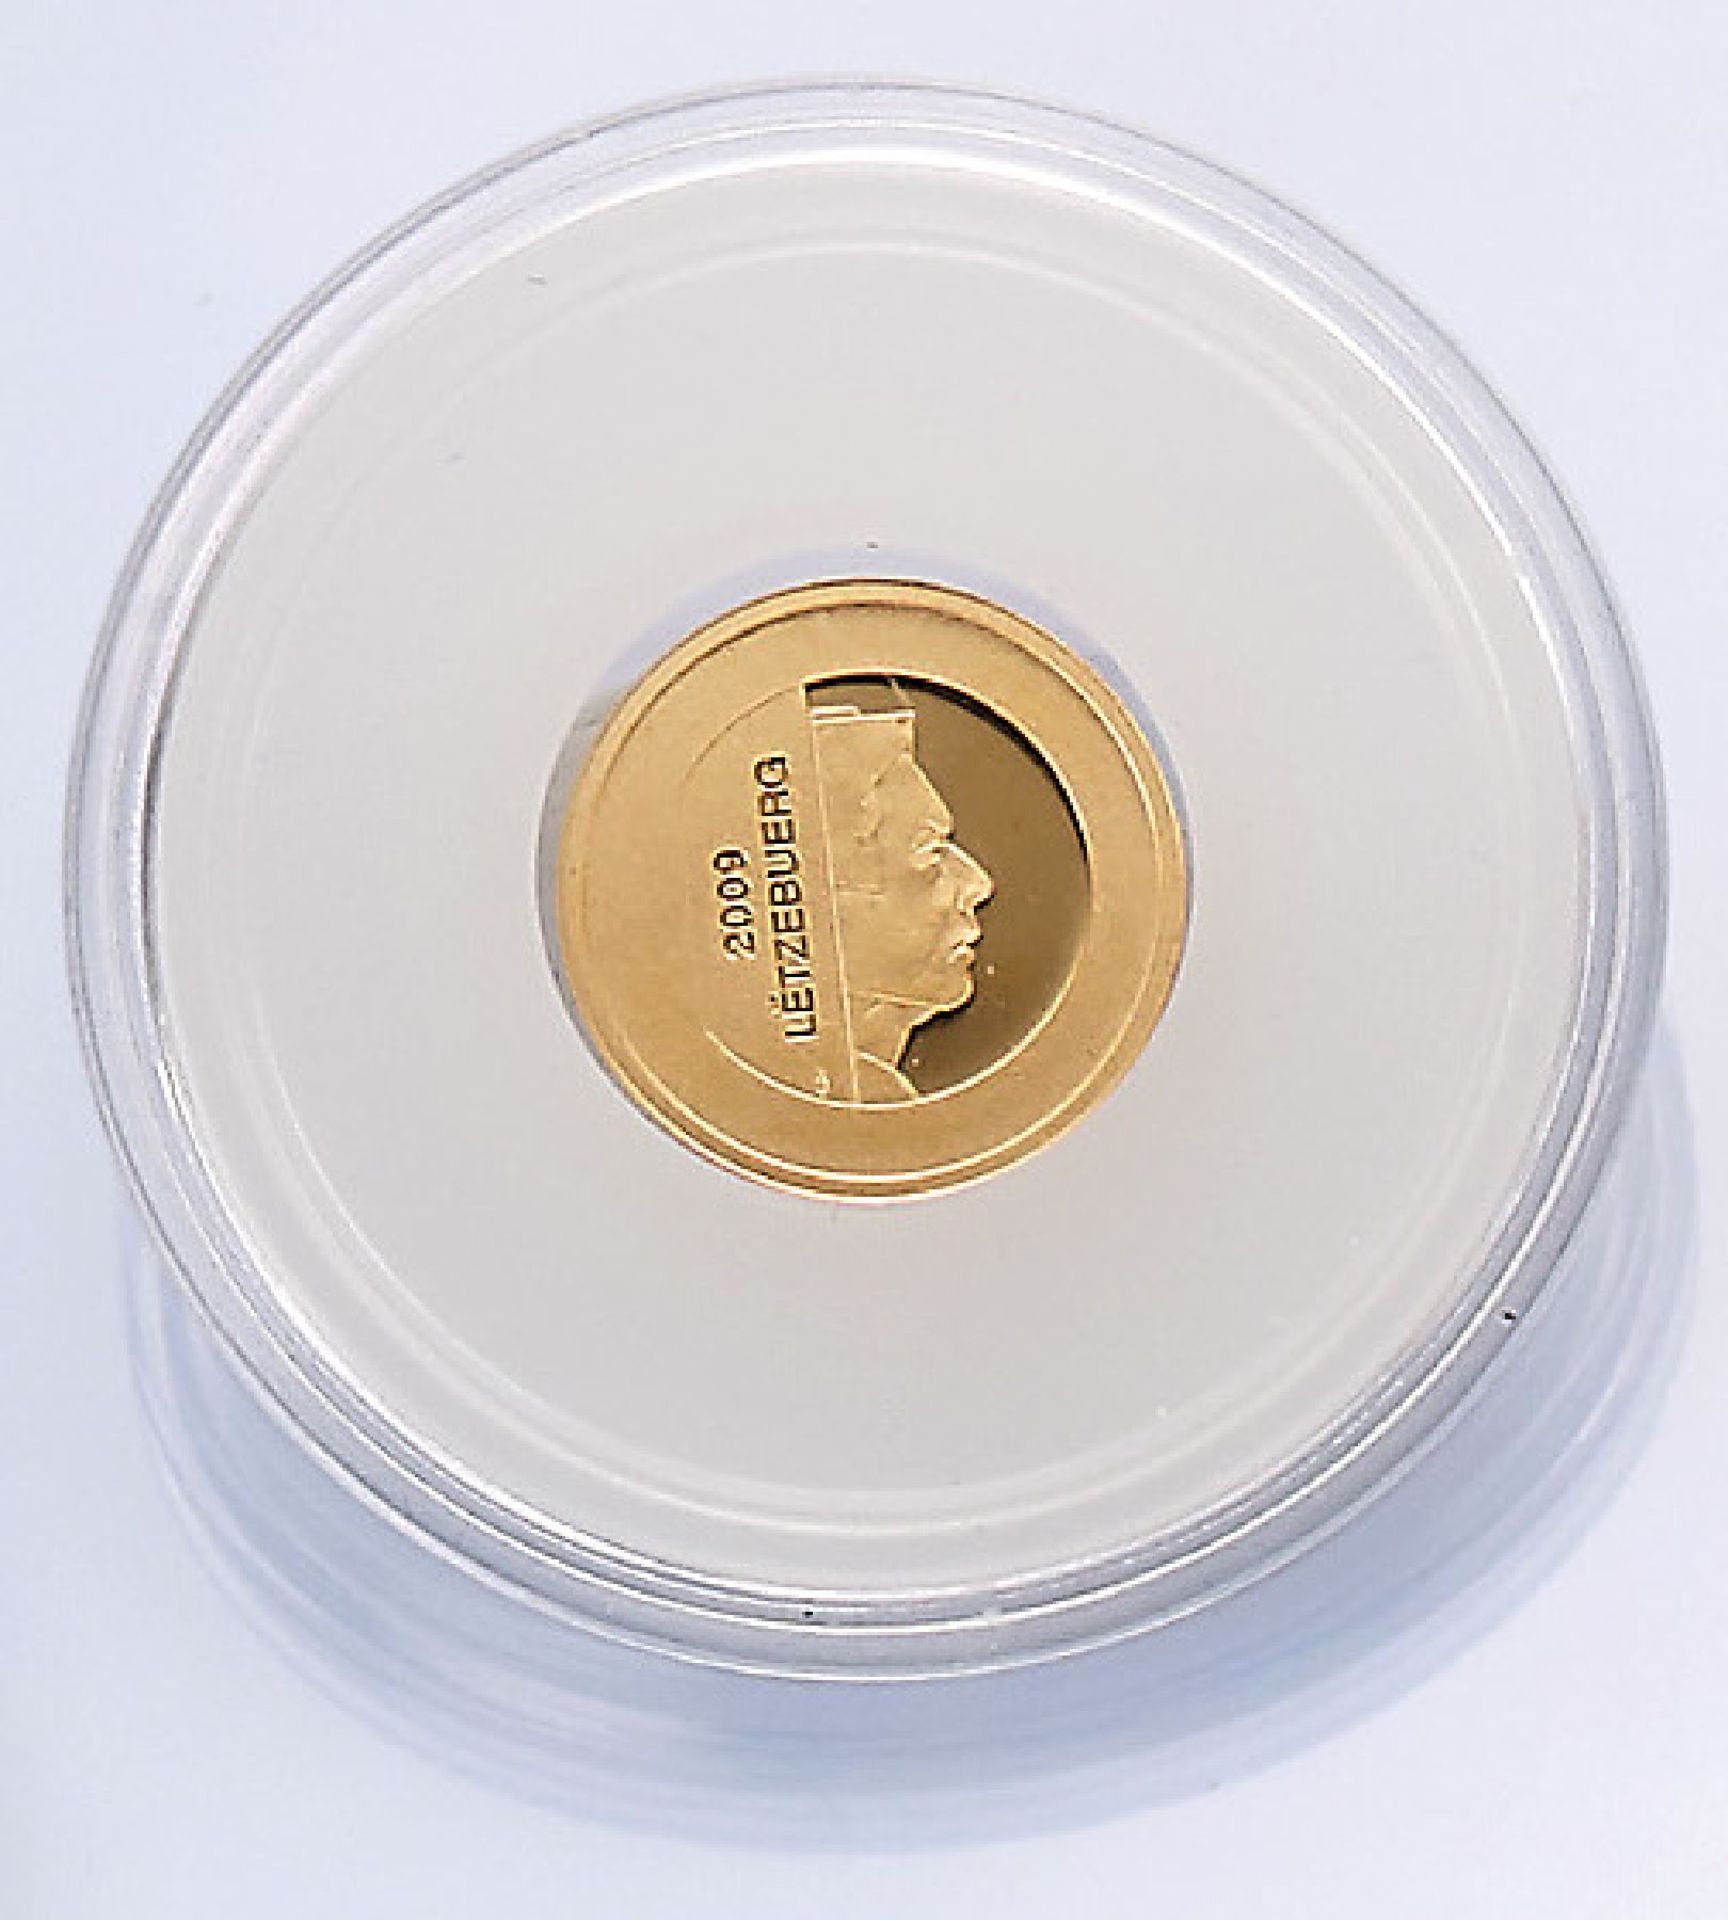 Goldmünze, 10 EURO, Luxemburg, 2009, Der Hirsch des Refugiums der Orvaler Abtei, 1/10 oz 999/000,